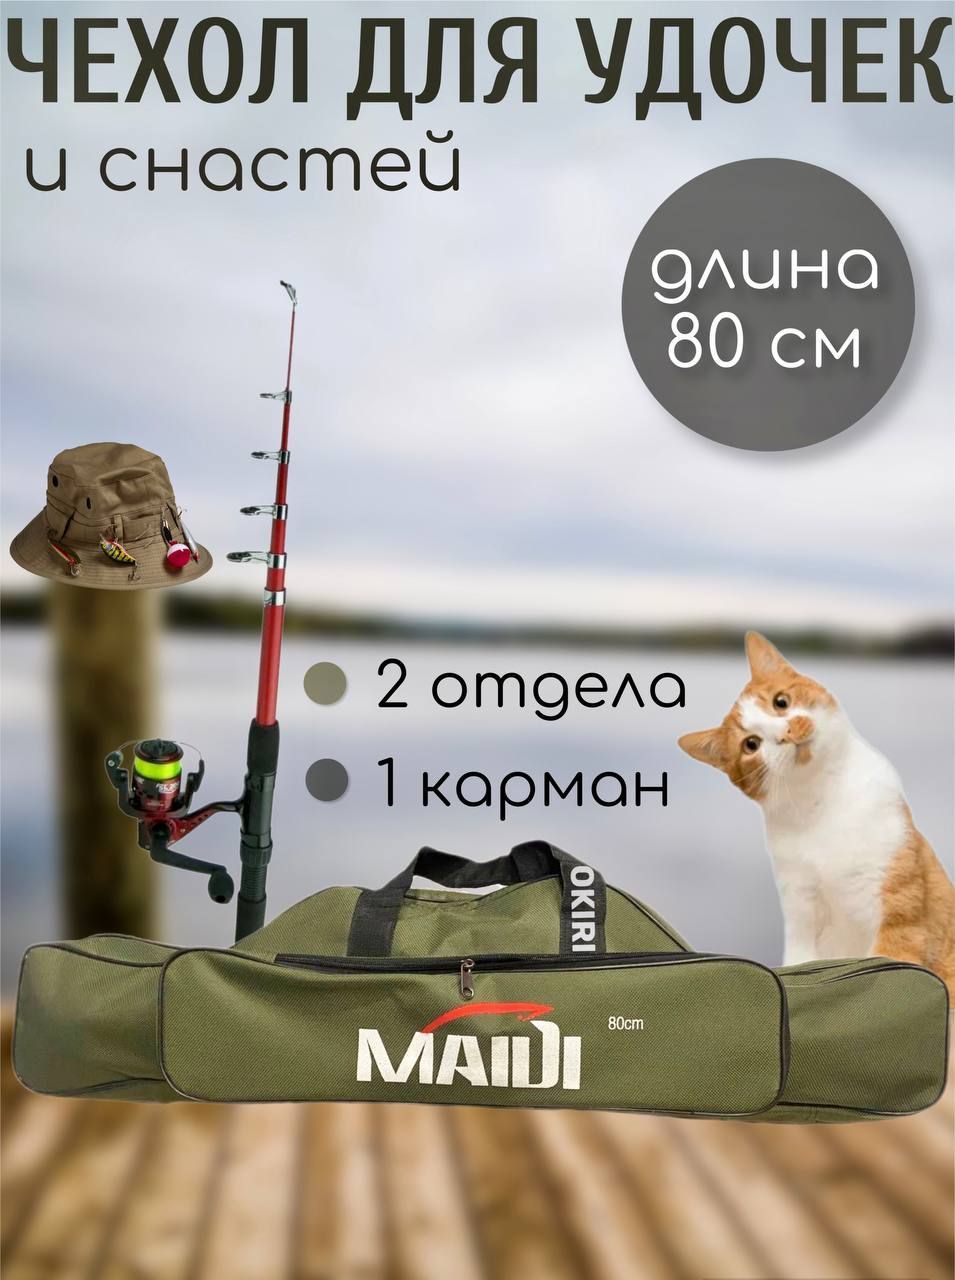 Чехол для удочки MAIDI 80 см, два больших отделения и карман, Сумка для  удочек и снастей, Чехол для рыбалки - к